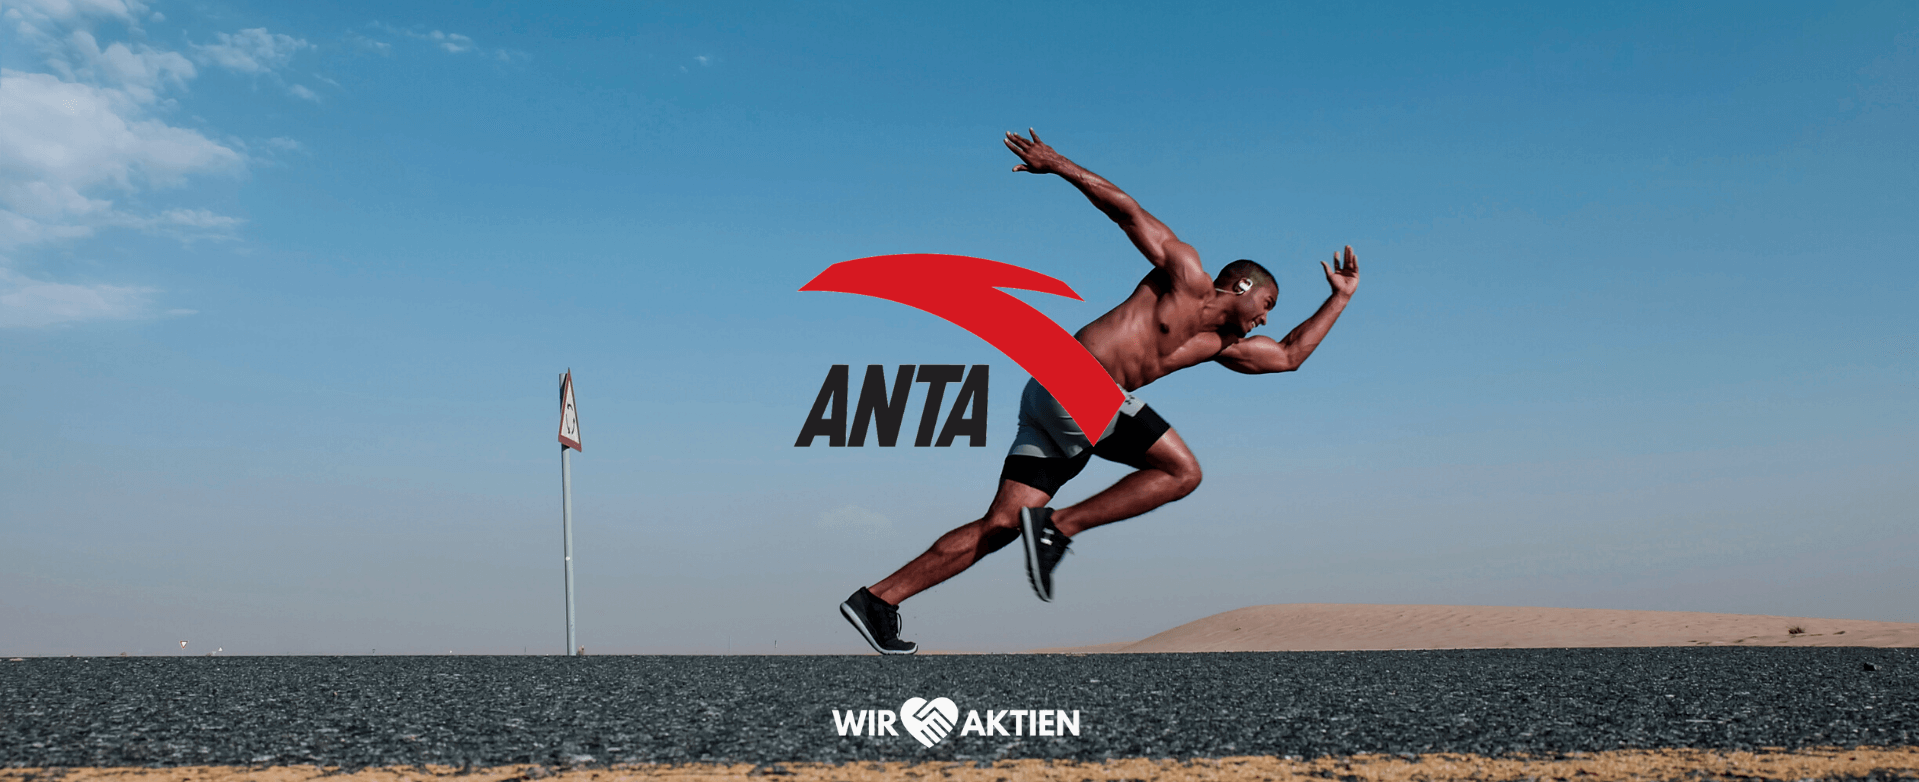 Anta Sports Aktie Analyse - Die Nike Alternative aus Asien